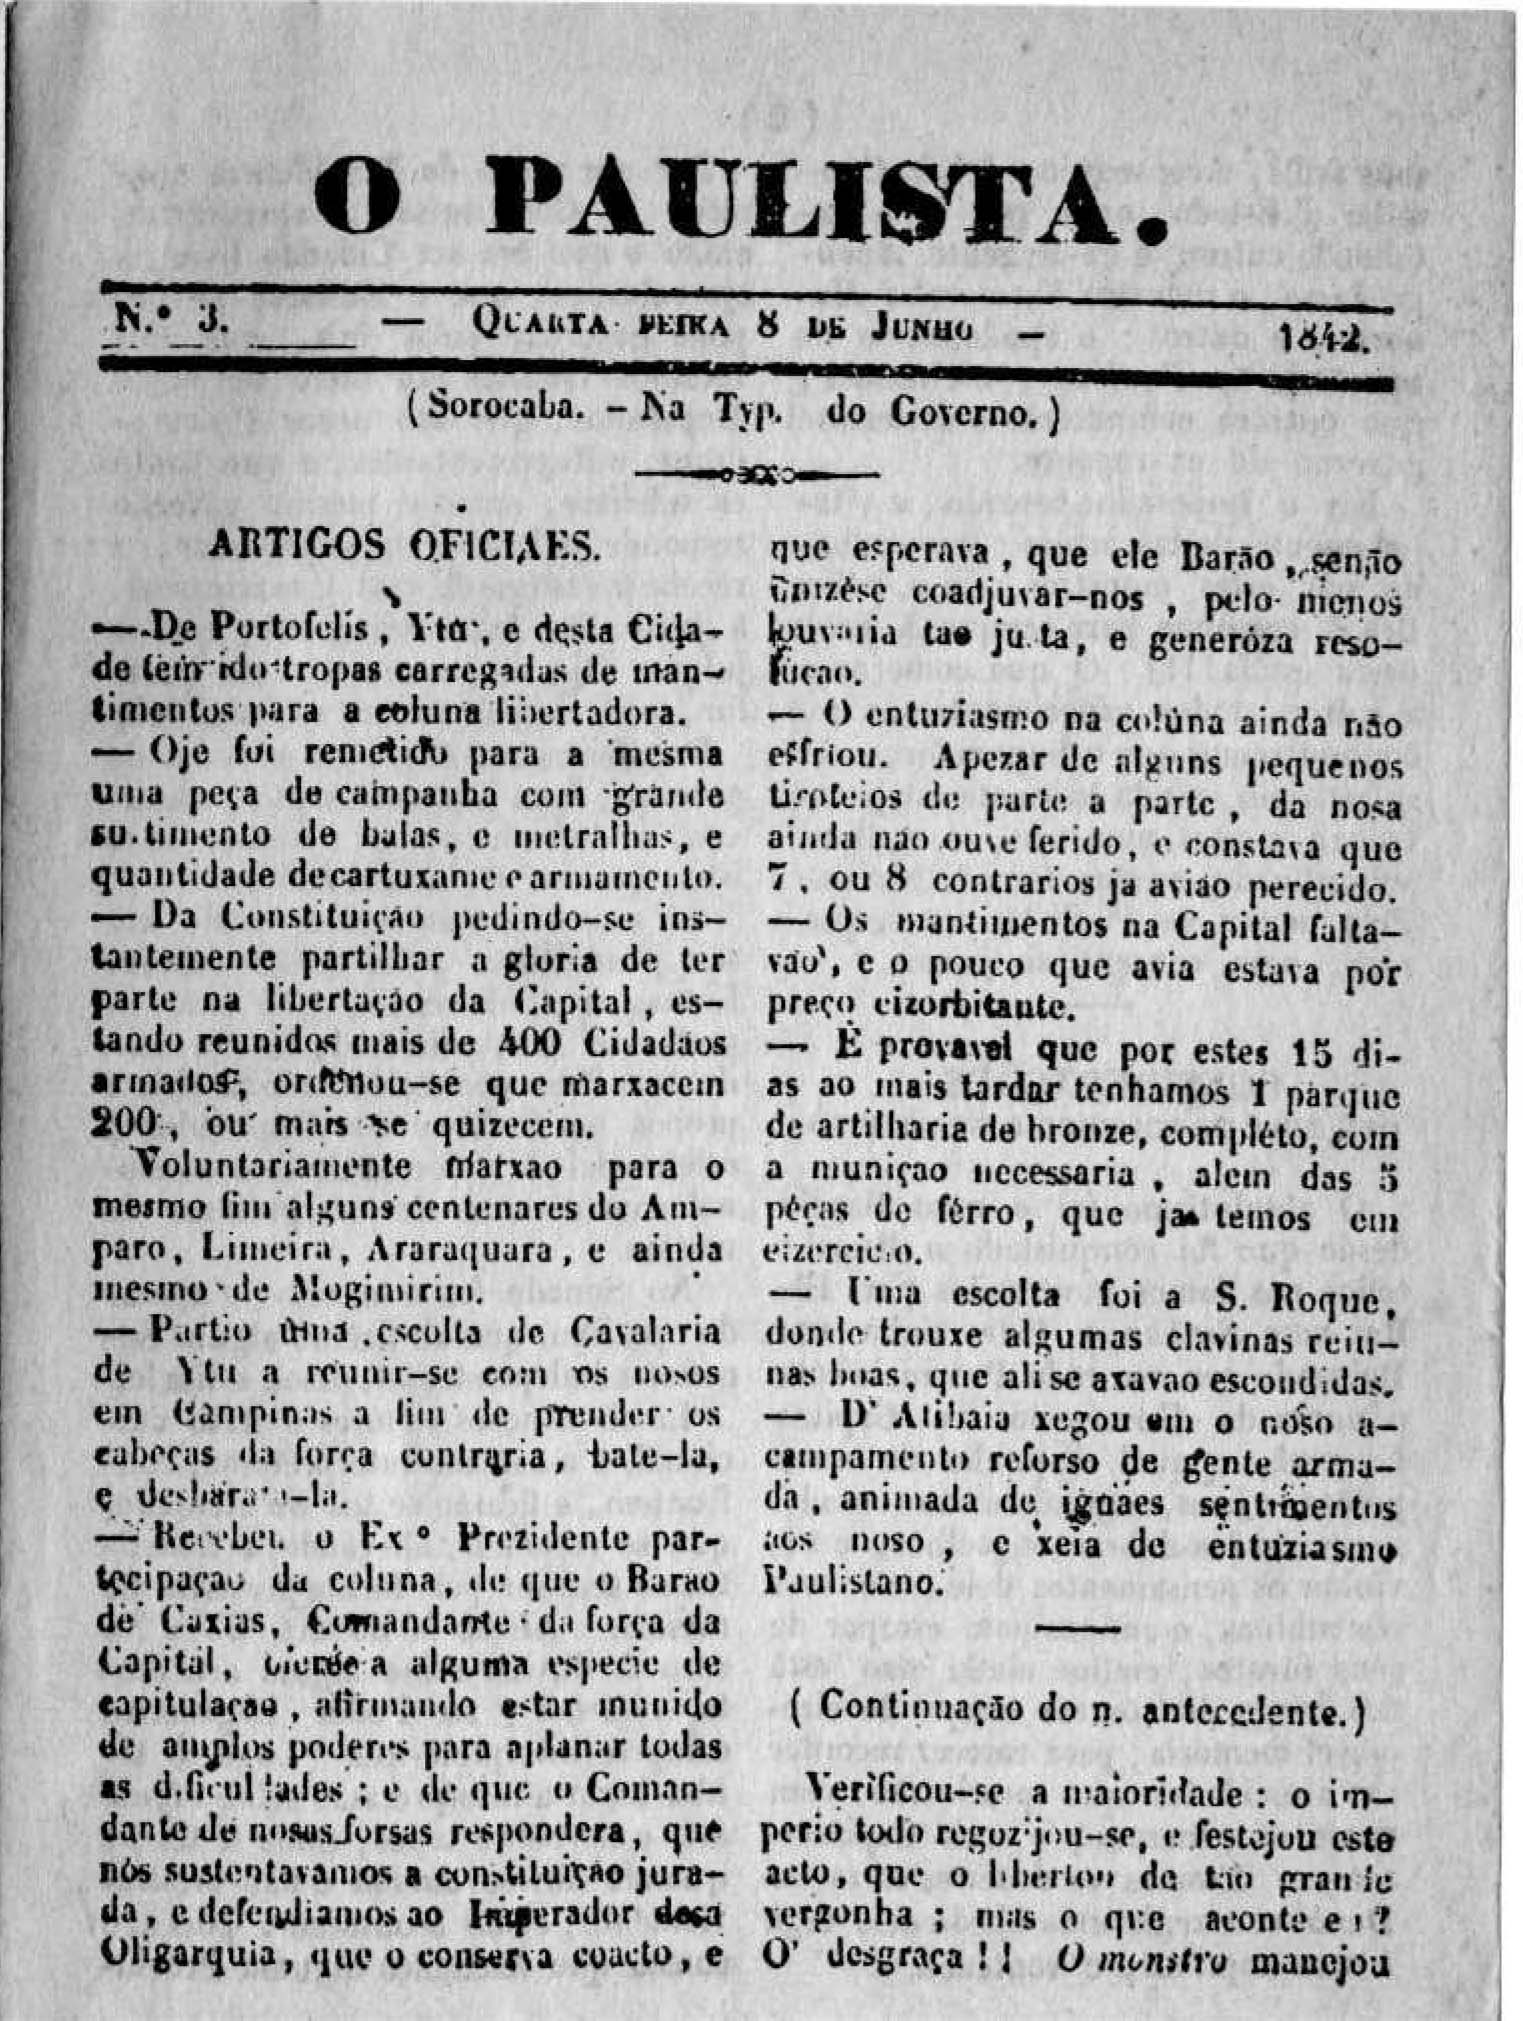 Primeira página do Jornal O Paulista. Fonte: FREITAS, Affonso A. de. A imprensa periódica de São Paulo desde os seus primórdios em 1823 até 1914. Diário Official, 1915.